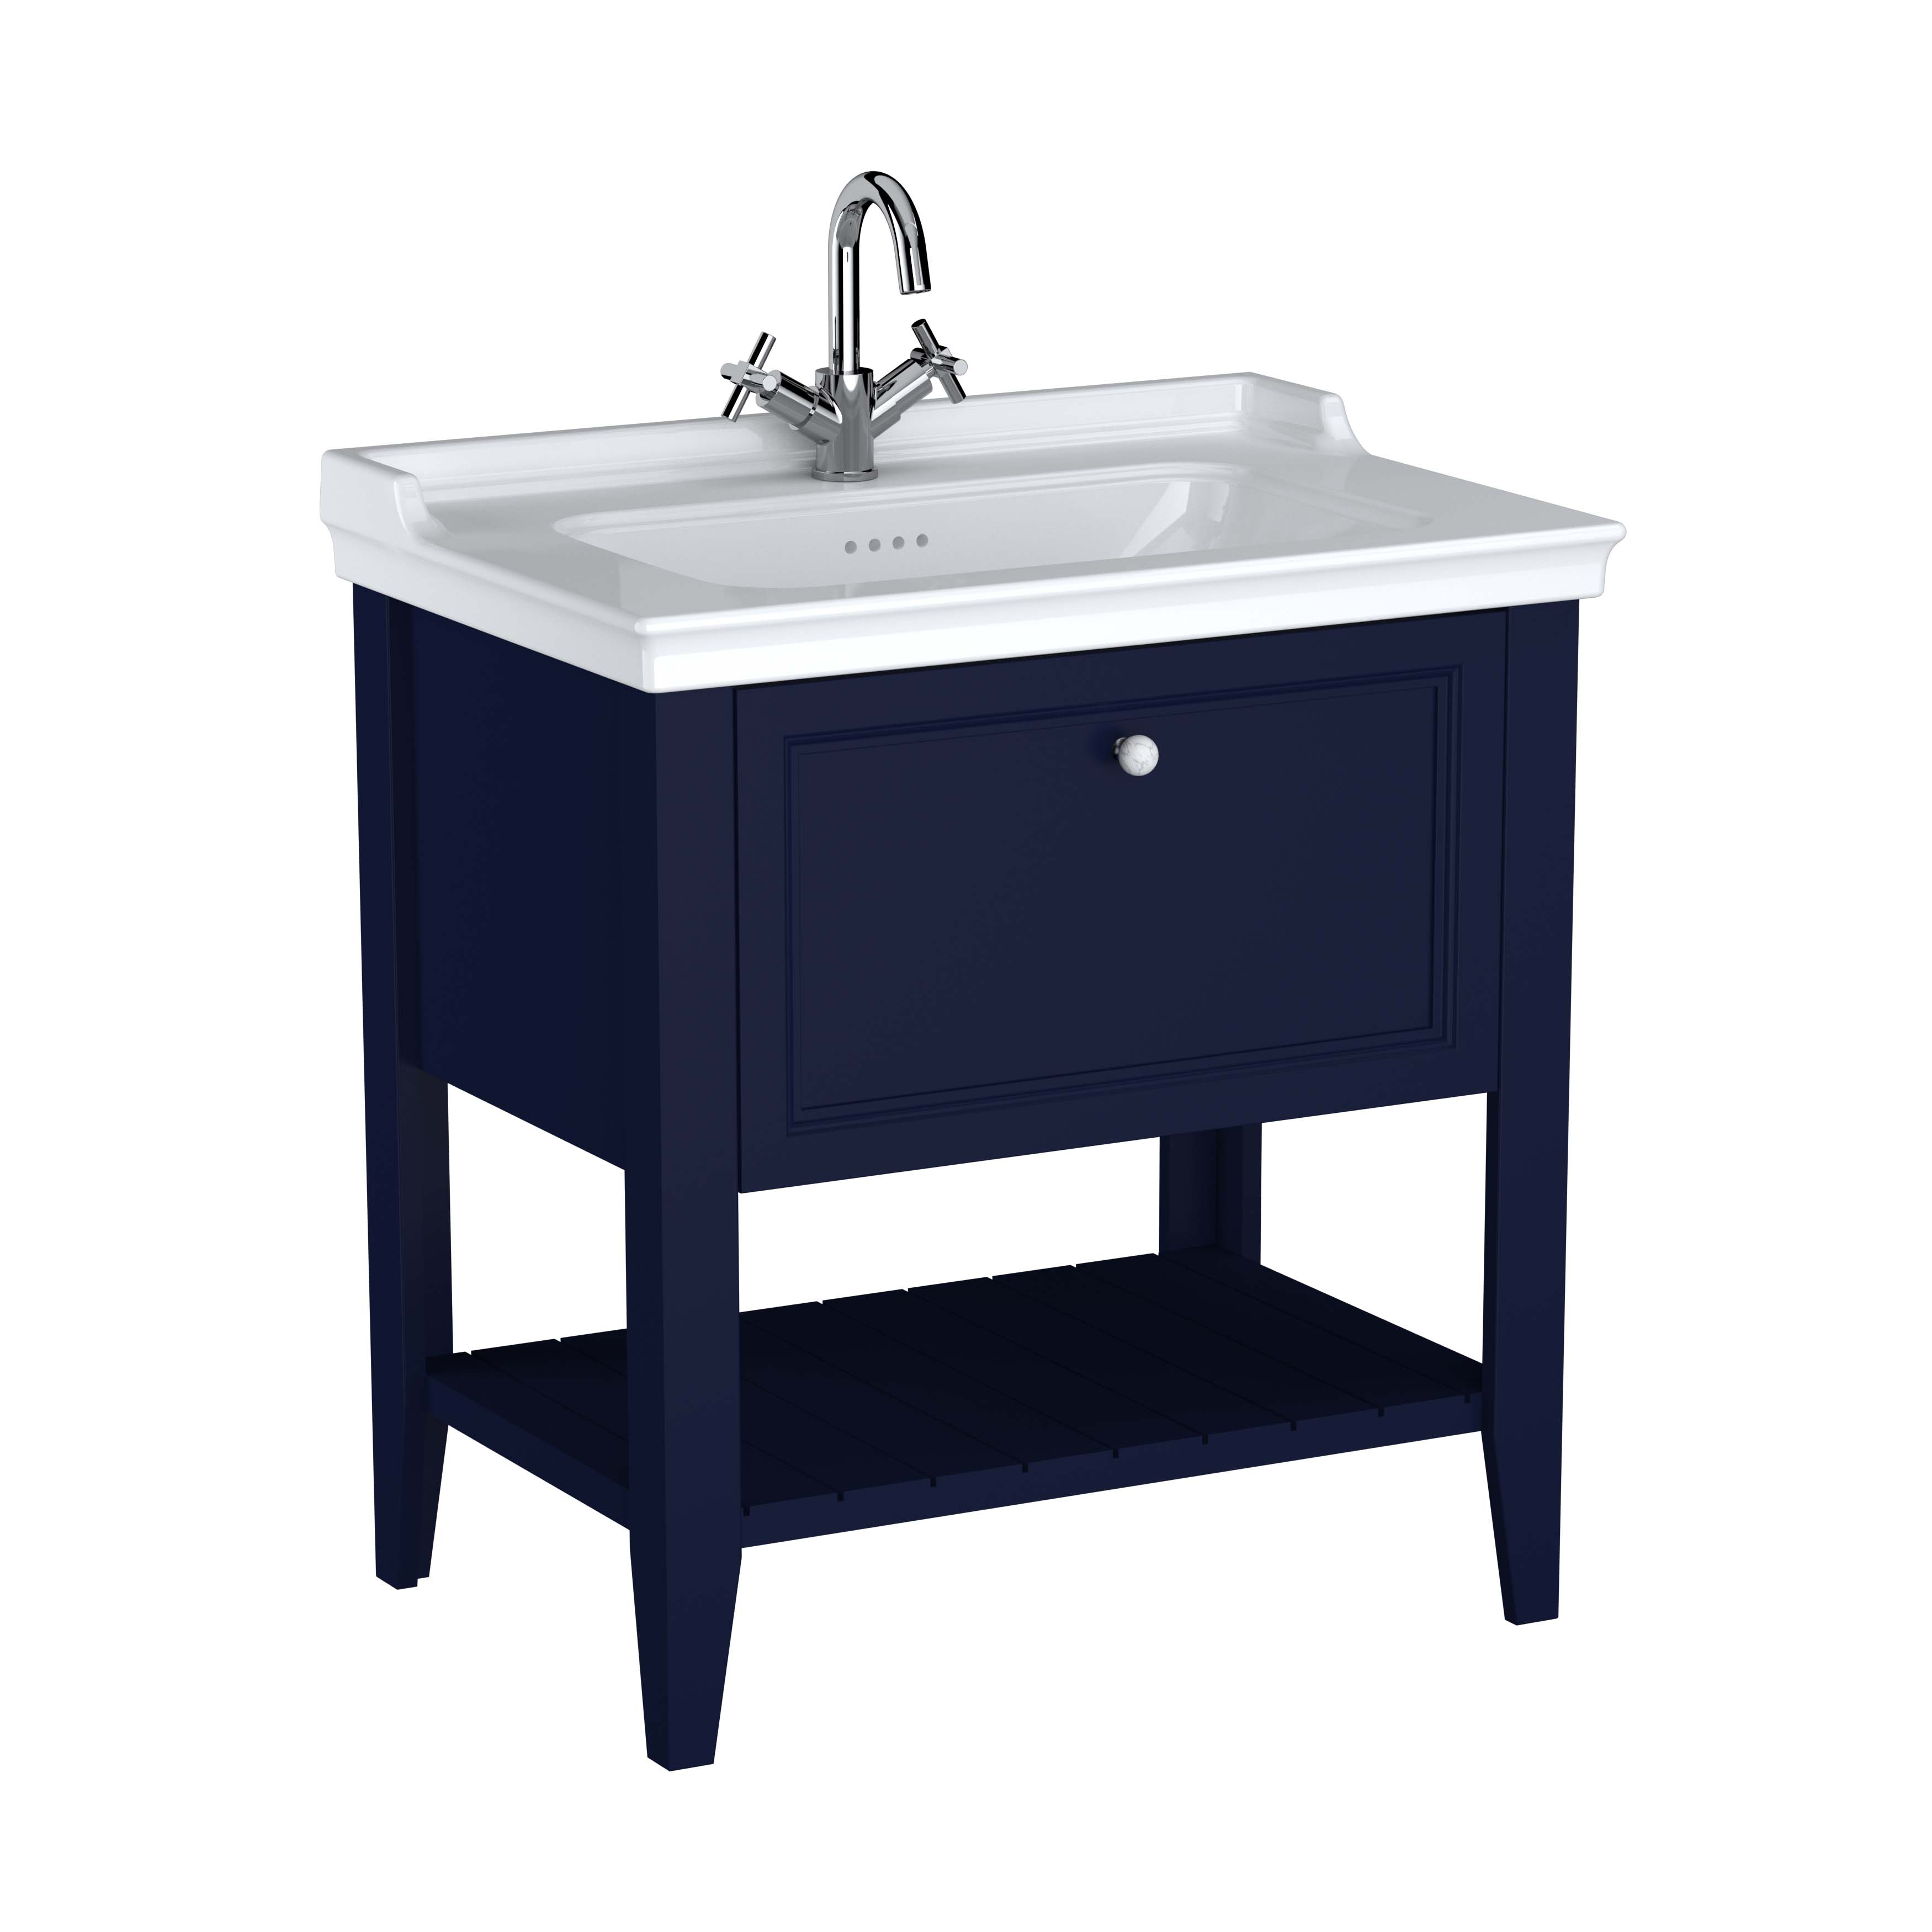 Valarte Set, 80 cm, Möbelwaschtisch + Waschtischunterschrank 1 Lade, Stahlblau (Lack)